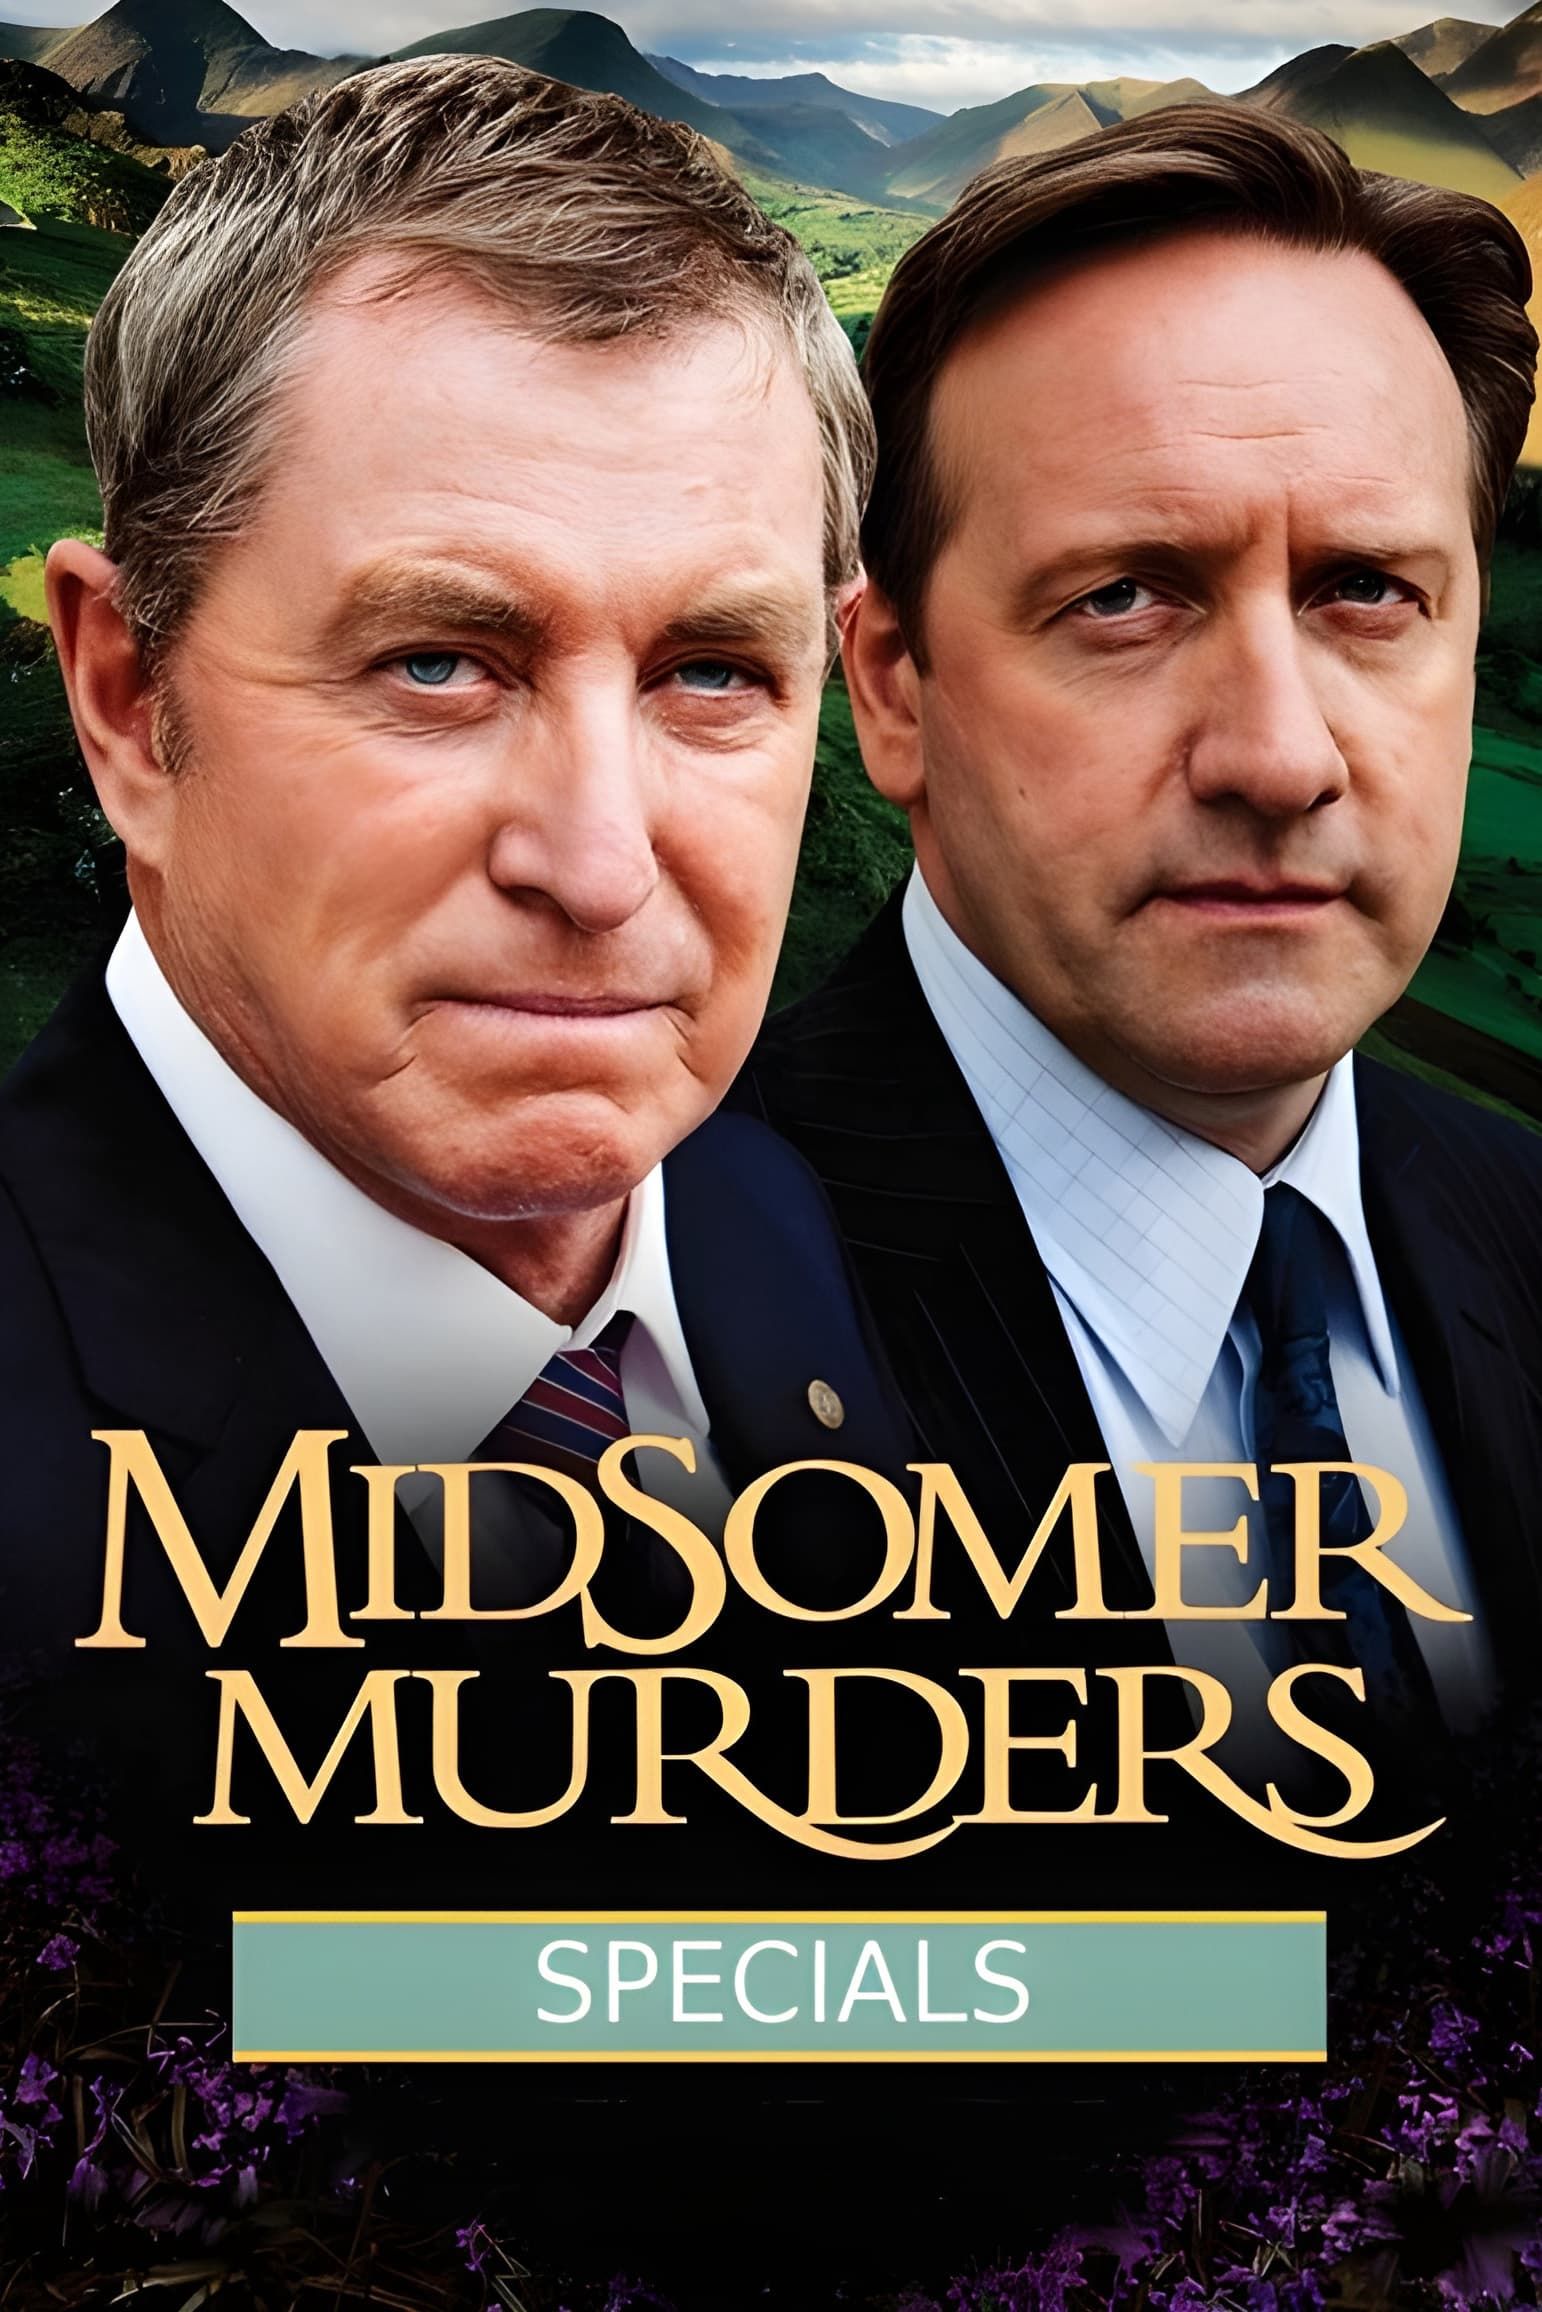 Watch Midsomer Murders (1997) TV Series Free Online - Plex